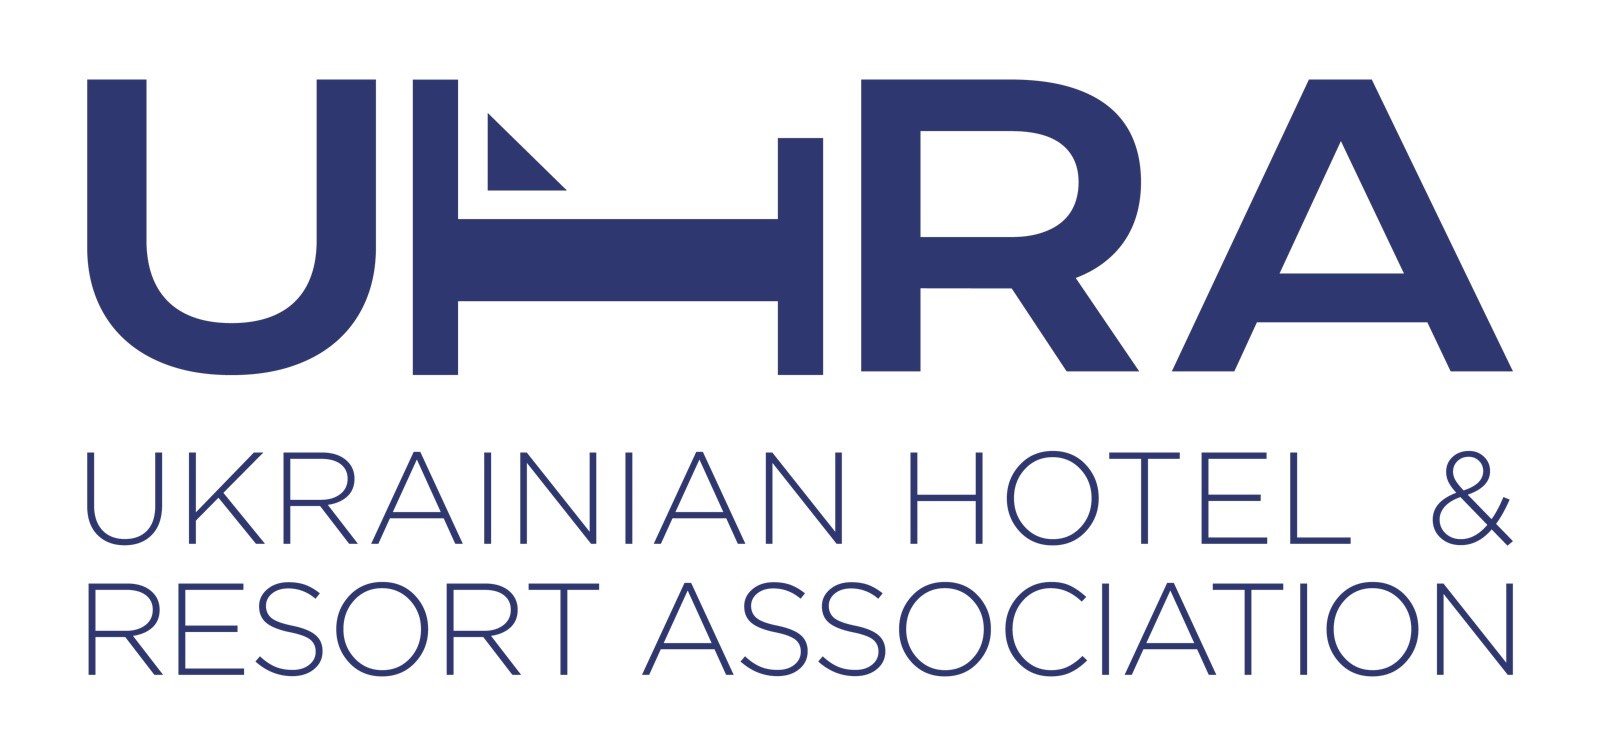 Ukrainian Hotel & Resort Association (UHRA)